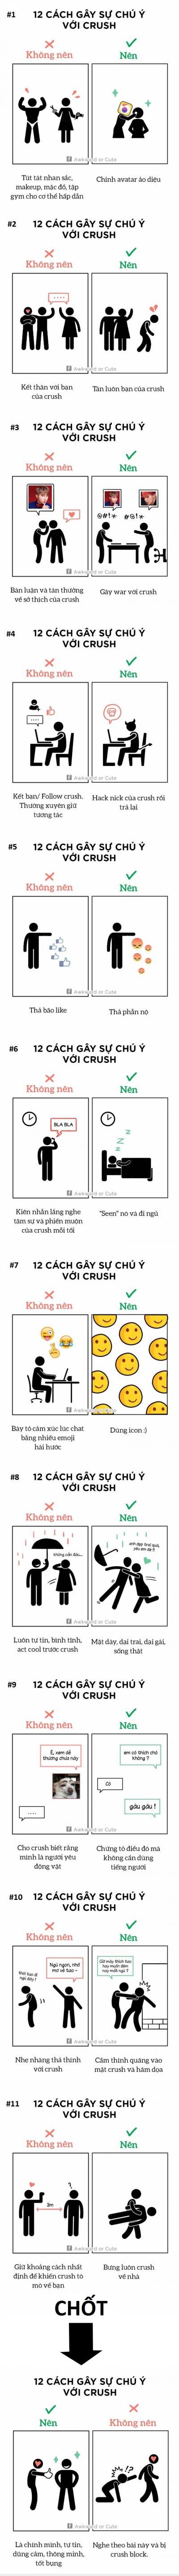  :x  how to gây chú ý với crush =))=))  :v  -  haivl | hài hước | hài vl  